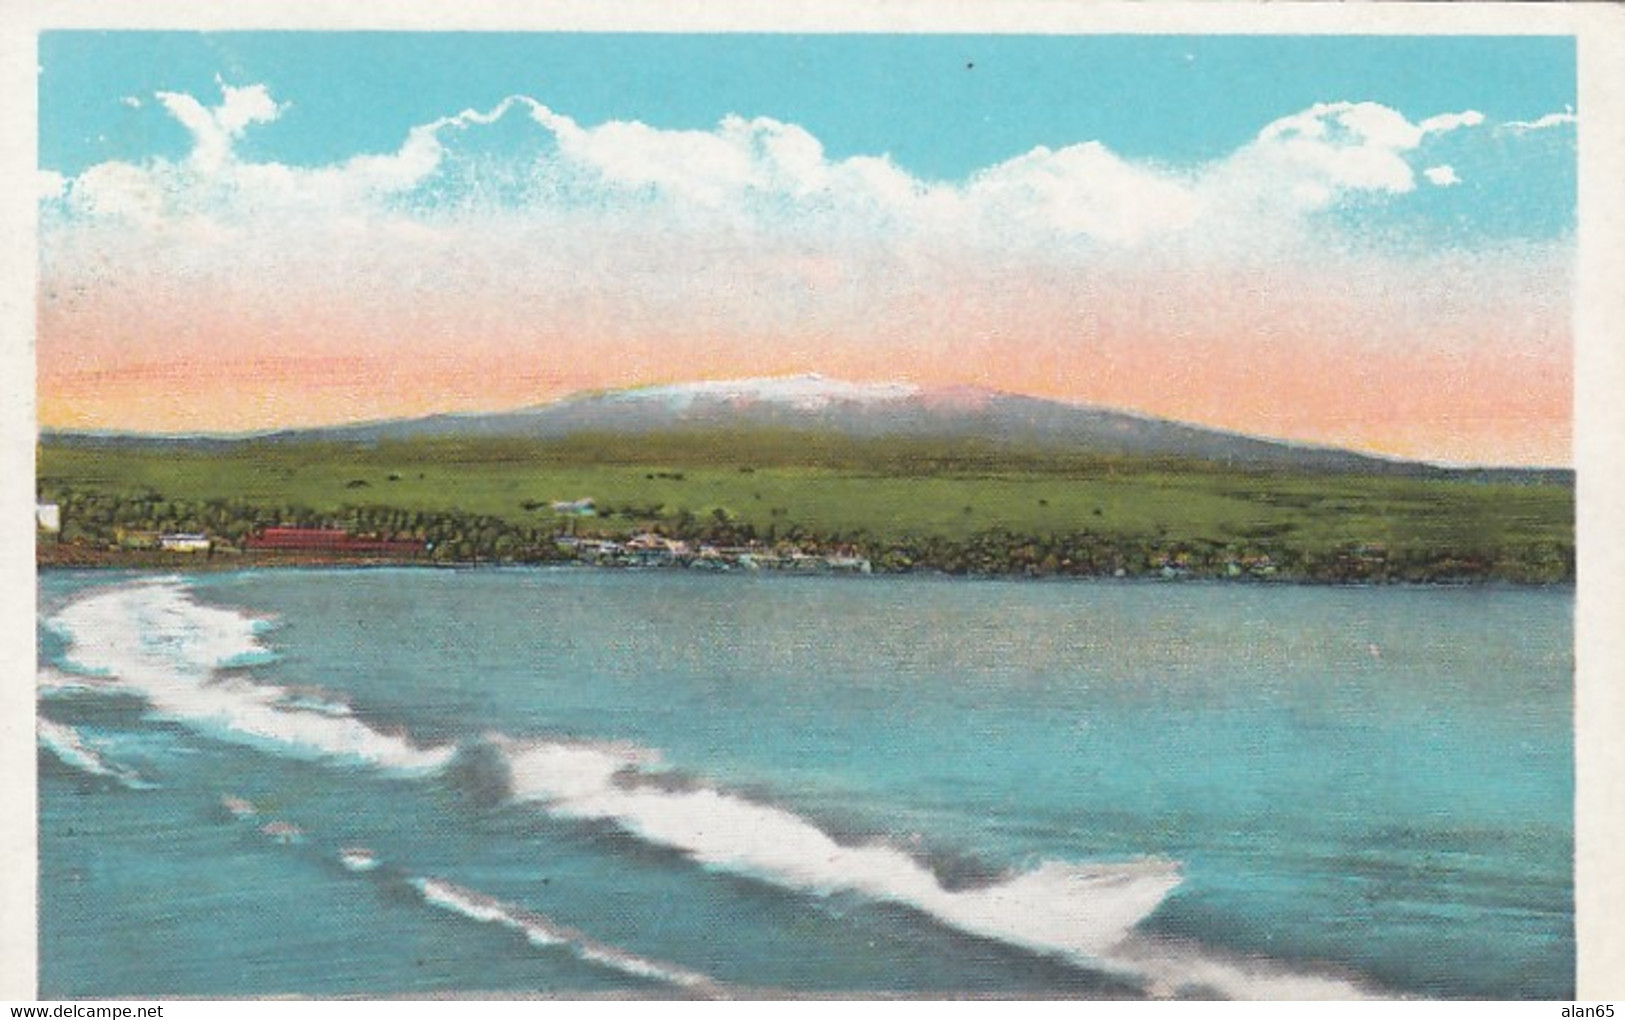 Hilo Hawaii, View Of City Beach And Mauna Kea Mountain, C1910s/20s Vintage Postcard - Hilo